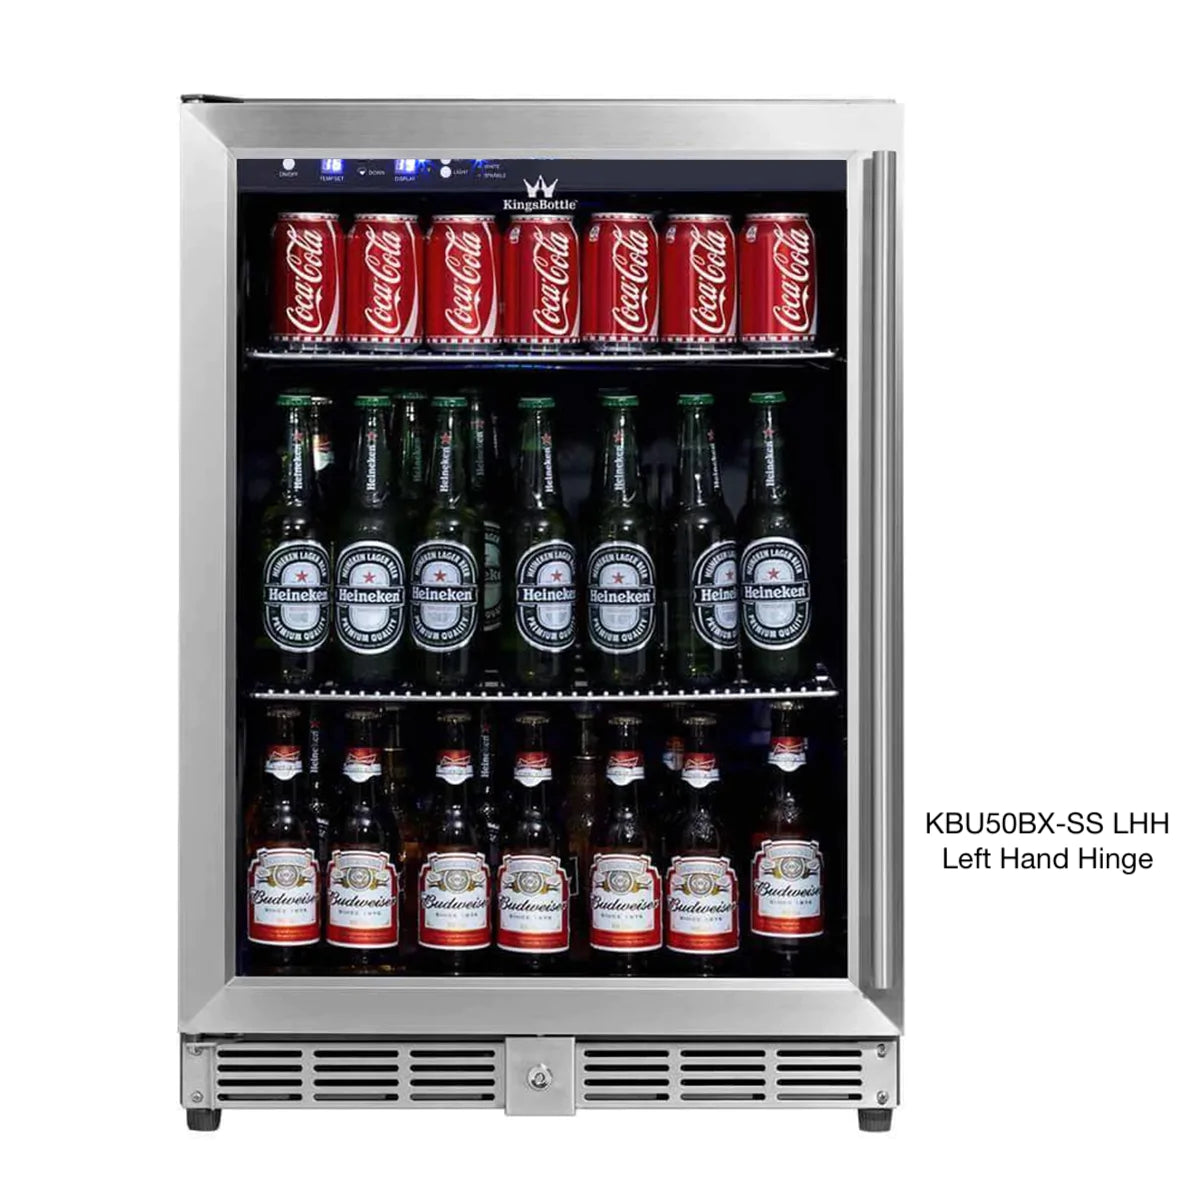 "Kingsbottle" 24 Inch Under Counter Beer Cooler Fridge Built In : KBU50BX-SS LHH